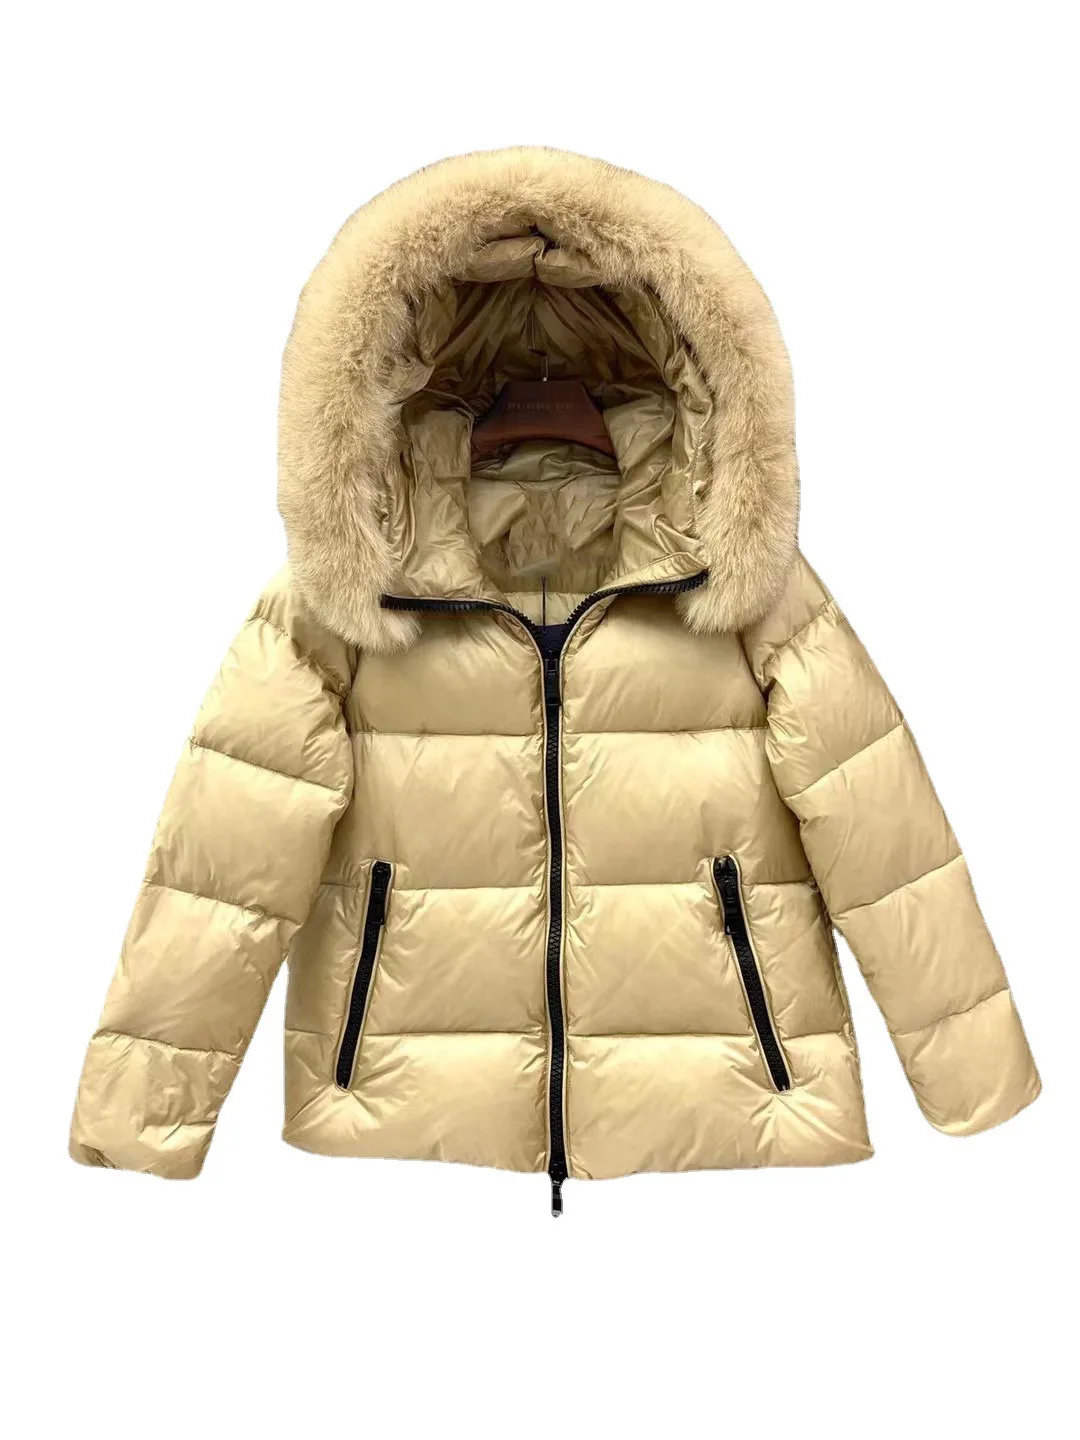 Short Hooded Down Jacket Women Winter 2022 Women's Luxury Warm Oversize Coat Female Fox Fur Collar White Duck Down Parkas enlarge